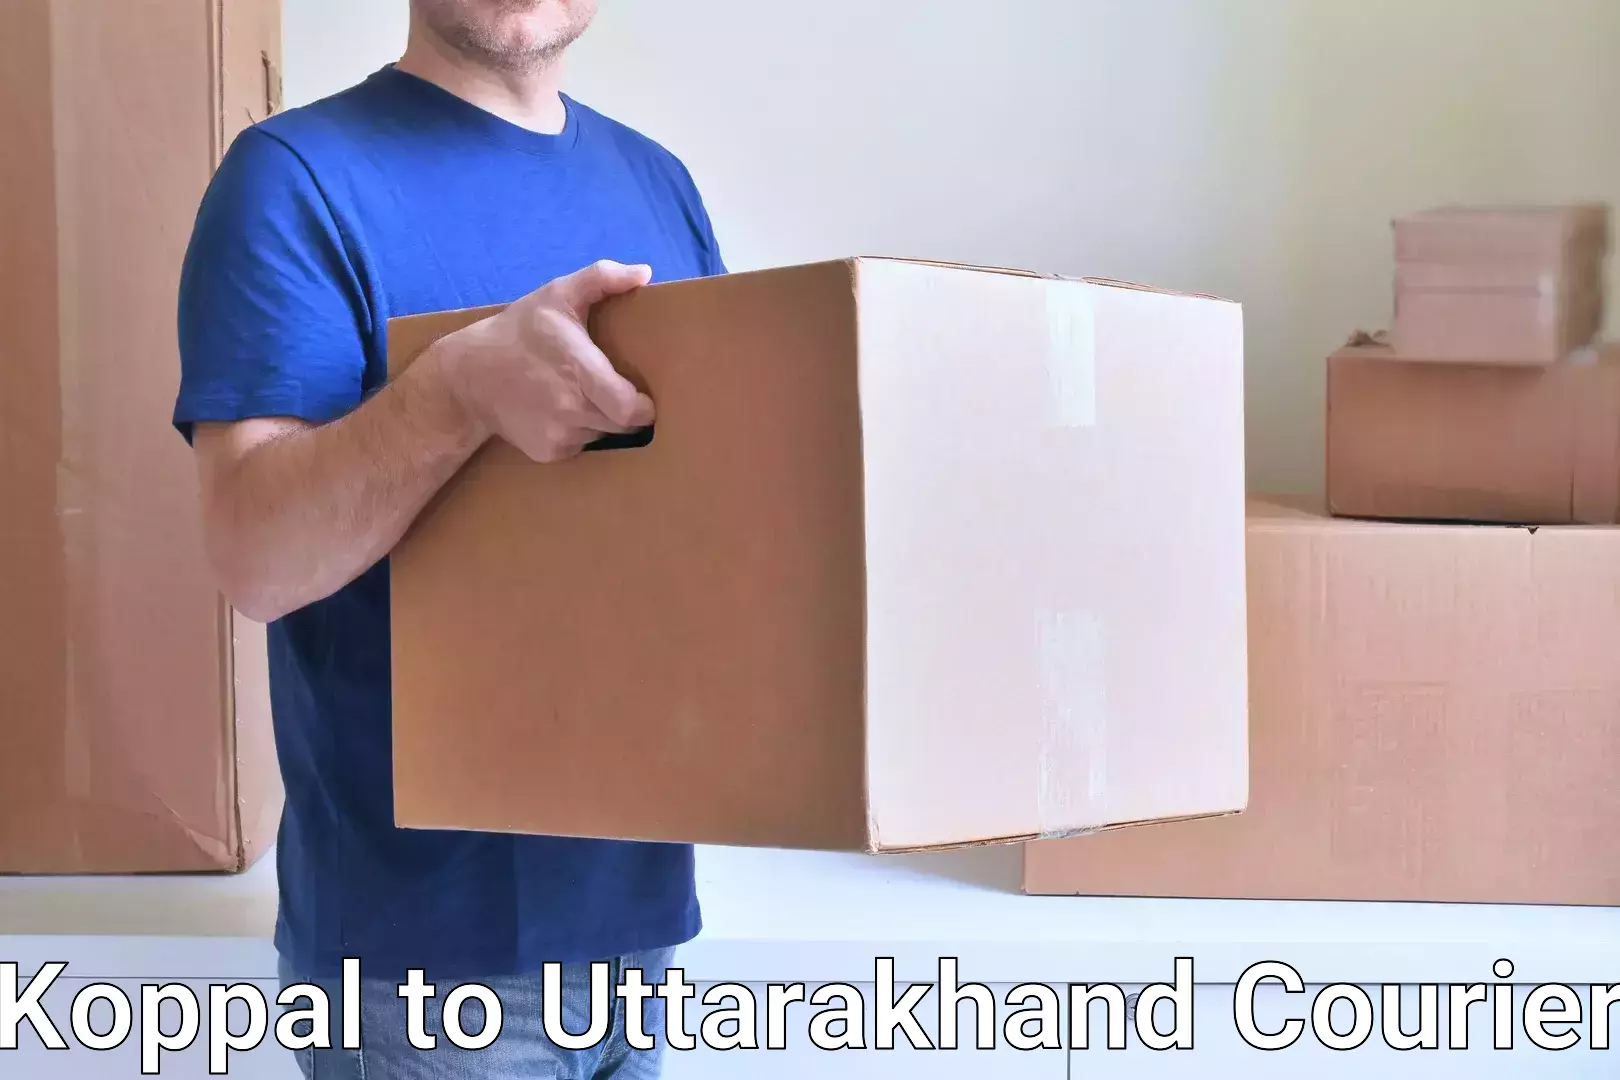 International parcel service Koppal to Uttarakhand